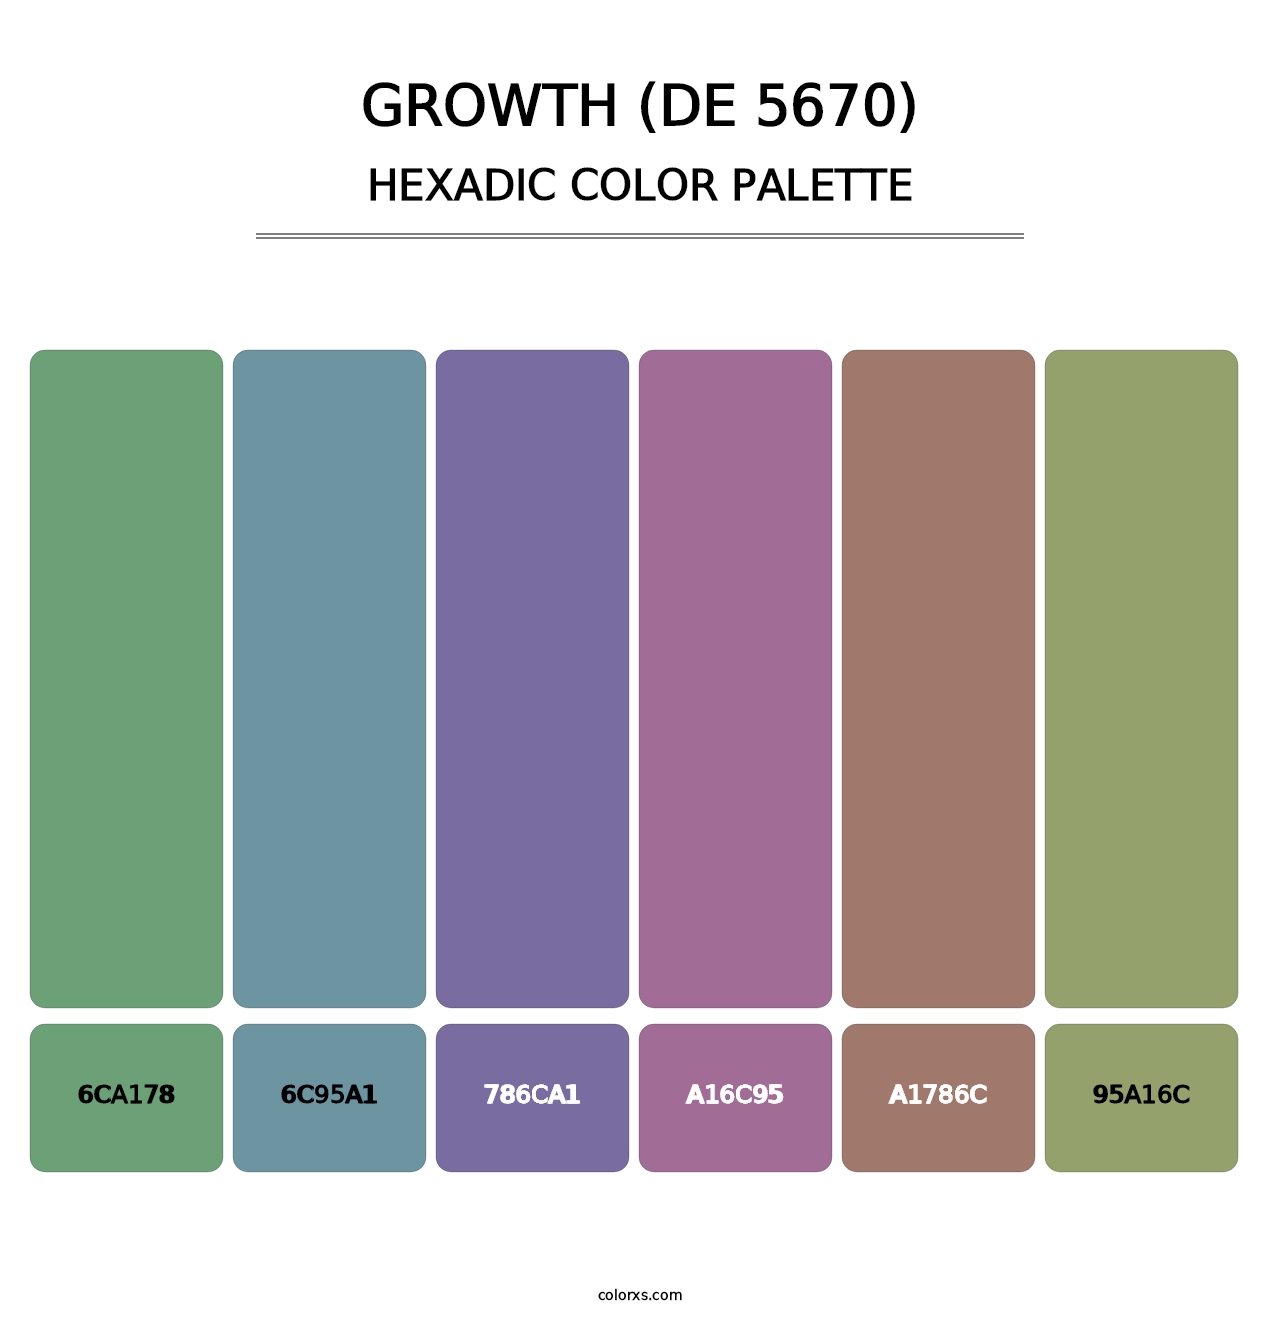 Growth (DE 5670) - Hexadic Color Palette